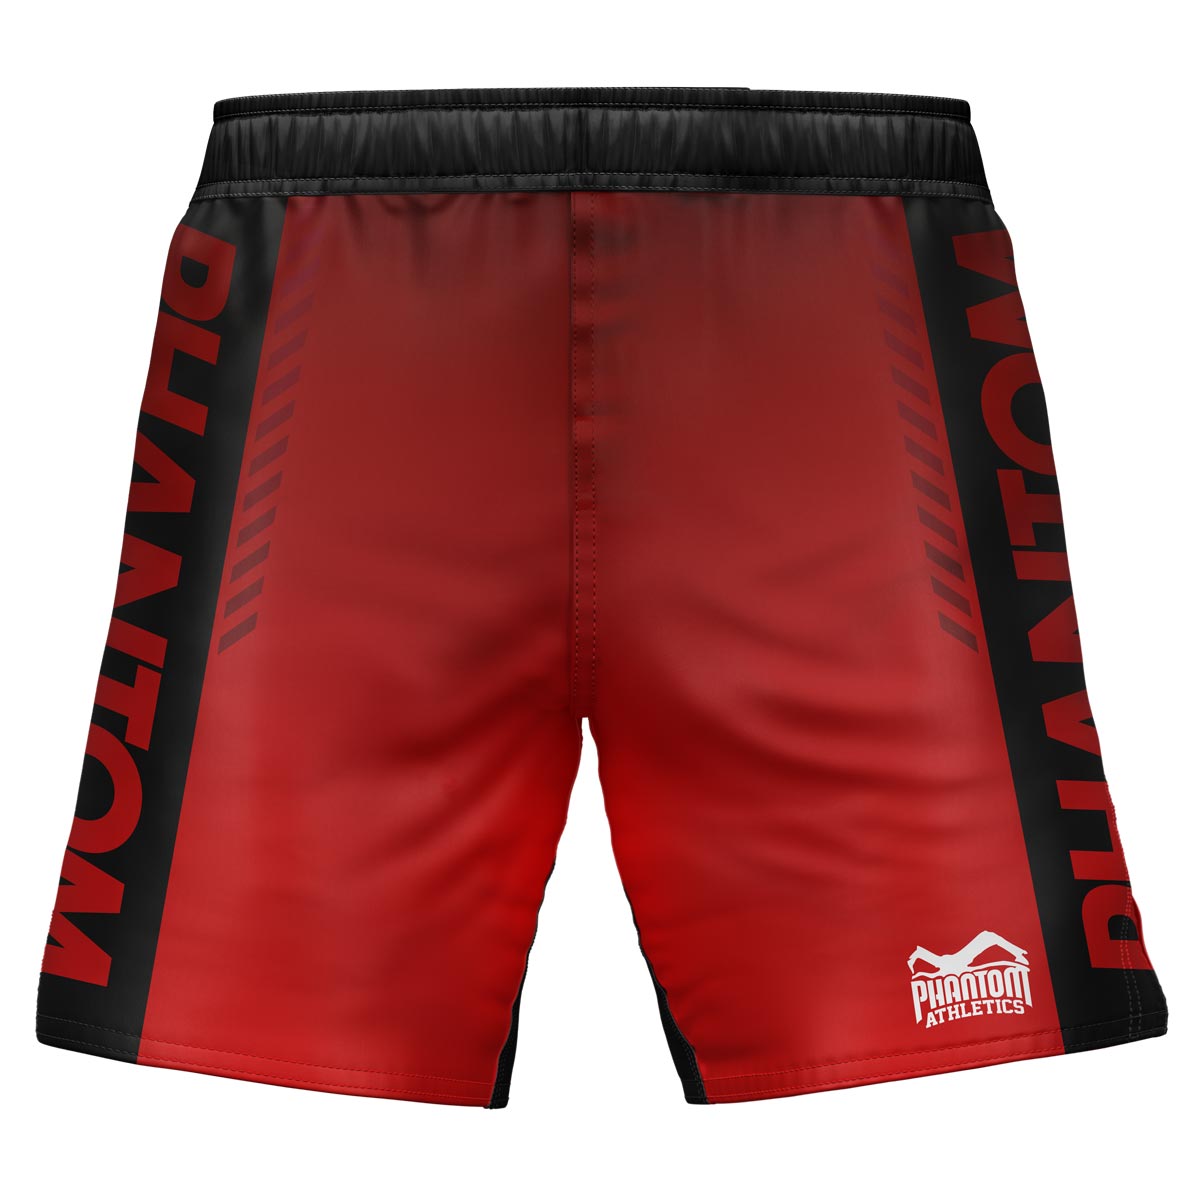 Shorts de luta Phantom MMA na edição limitada RED. Ultra flexível e resistente a rasgos. Ideal para MMA, luta livre, Jiu-Jitsu, K1 ou boxe tailandês.